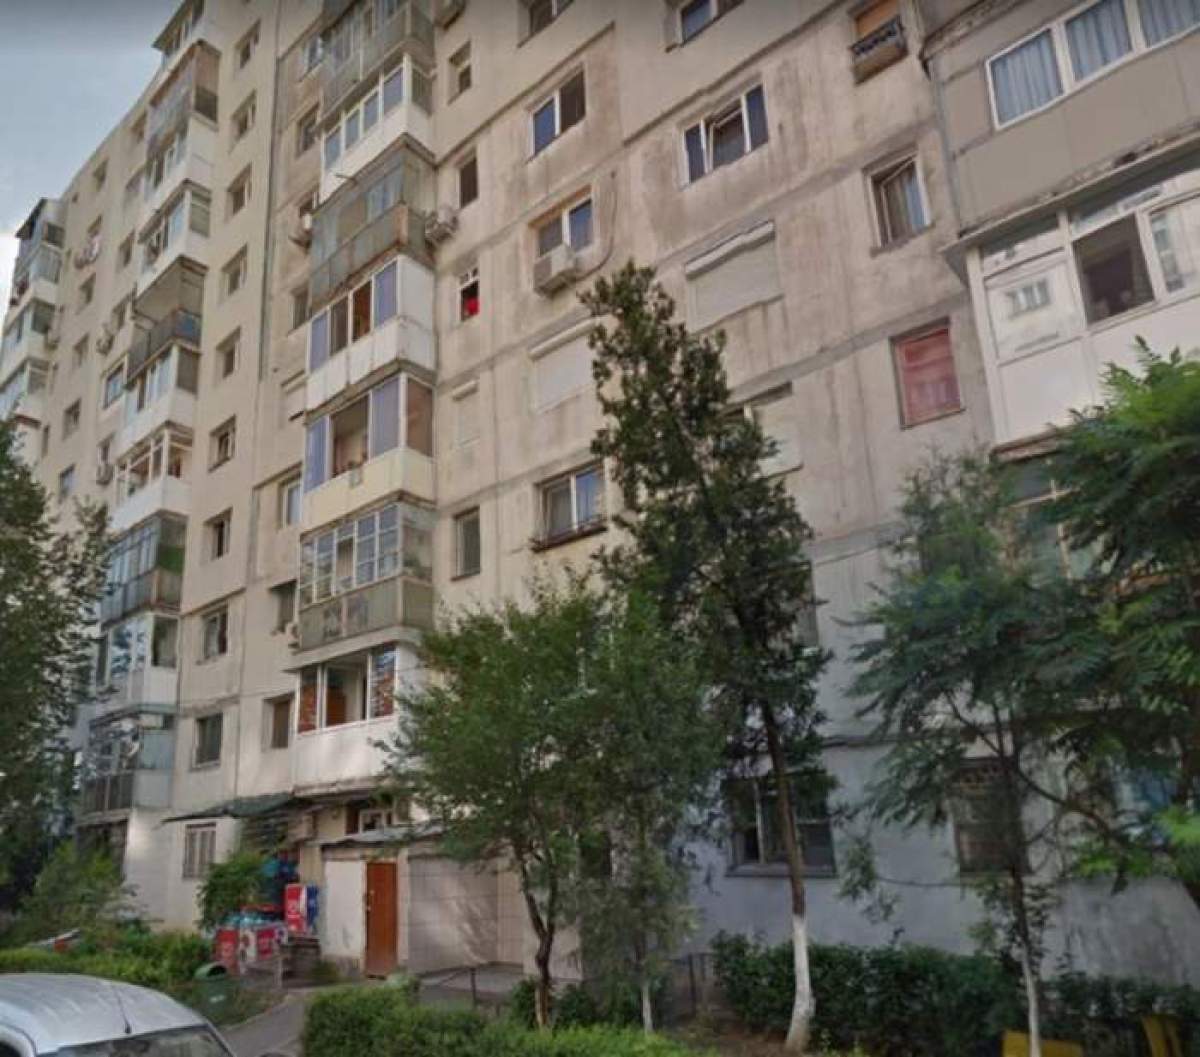 Un bărbat de 80 de ani a murit, după ce a căzut de la etajul 3 al unui bloc, în Cluj